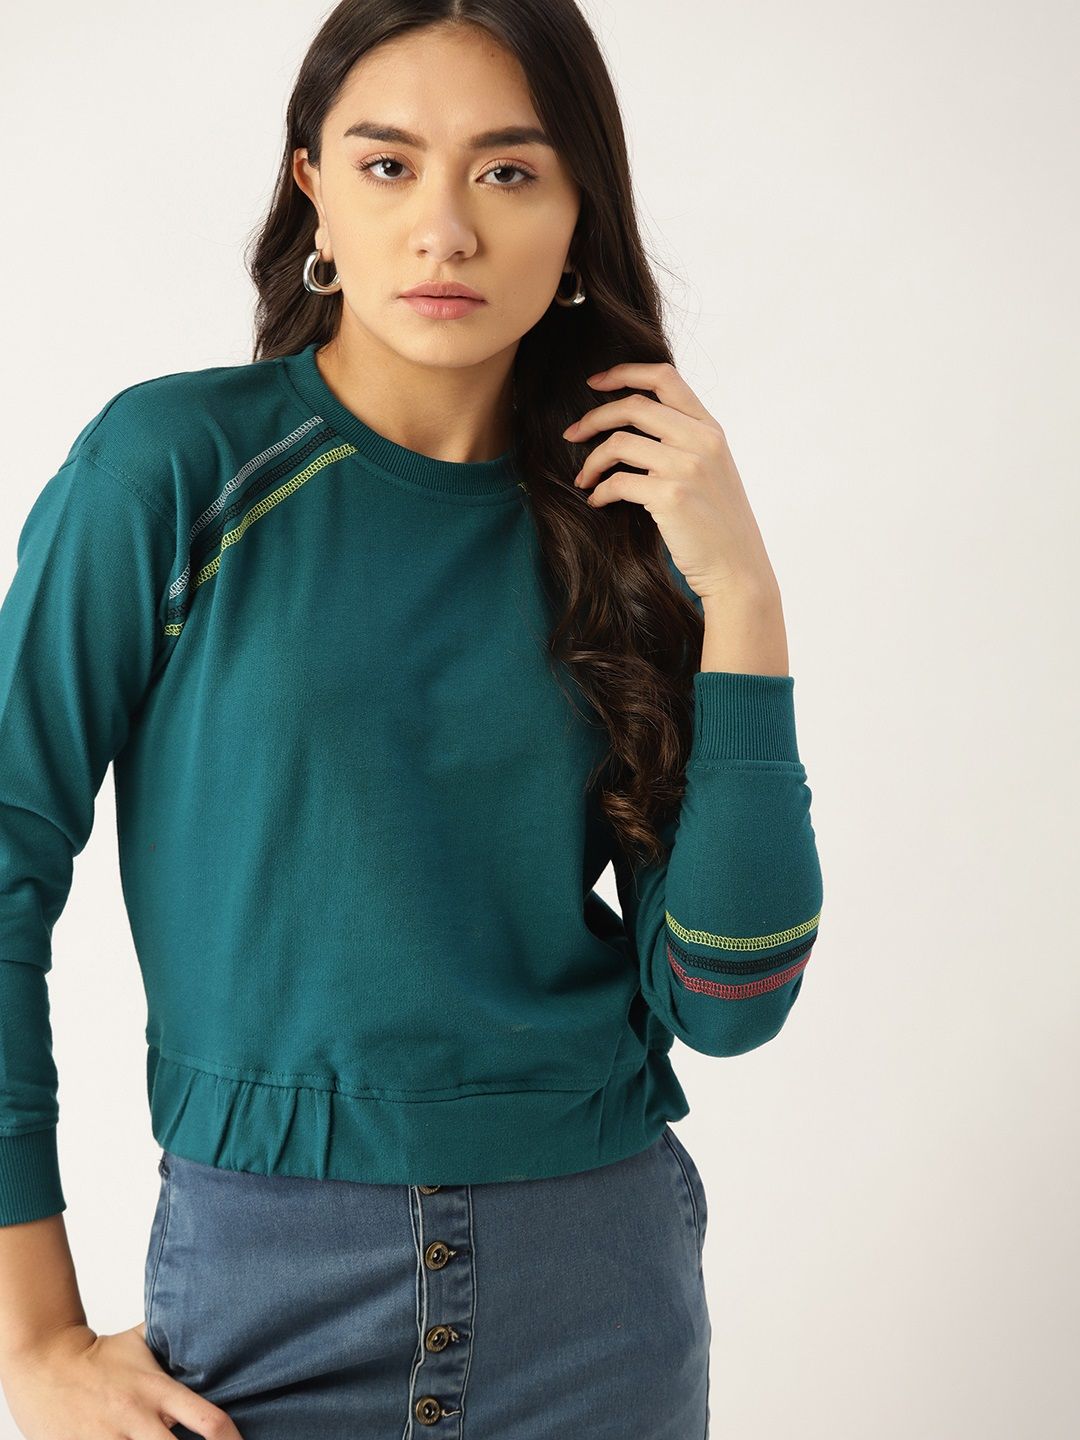 DressBerry Women Teal Green Solid Sweatshirt Price in India